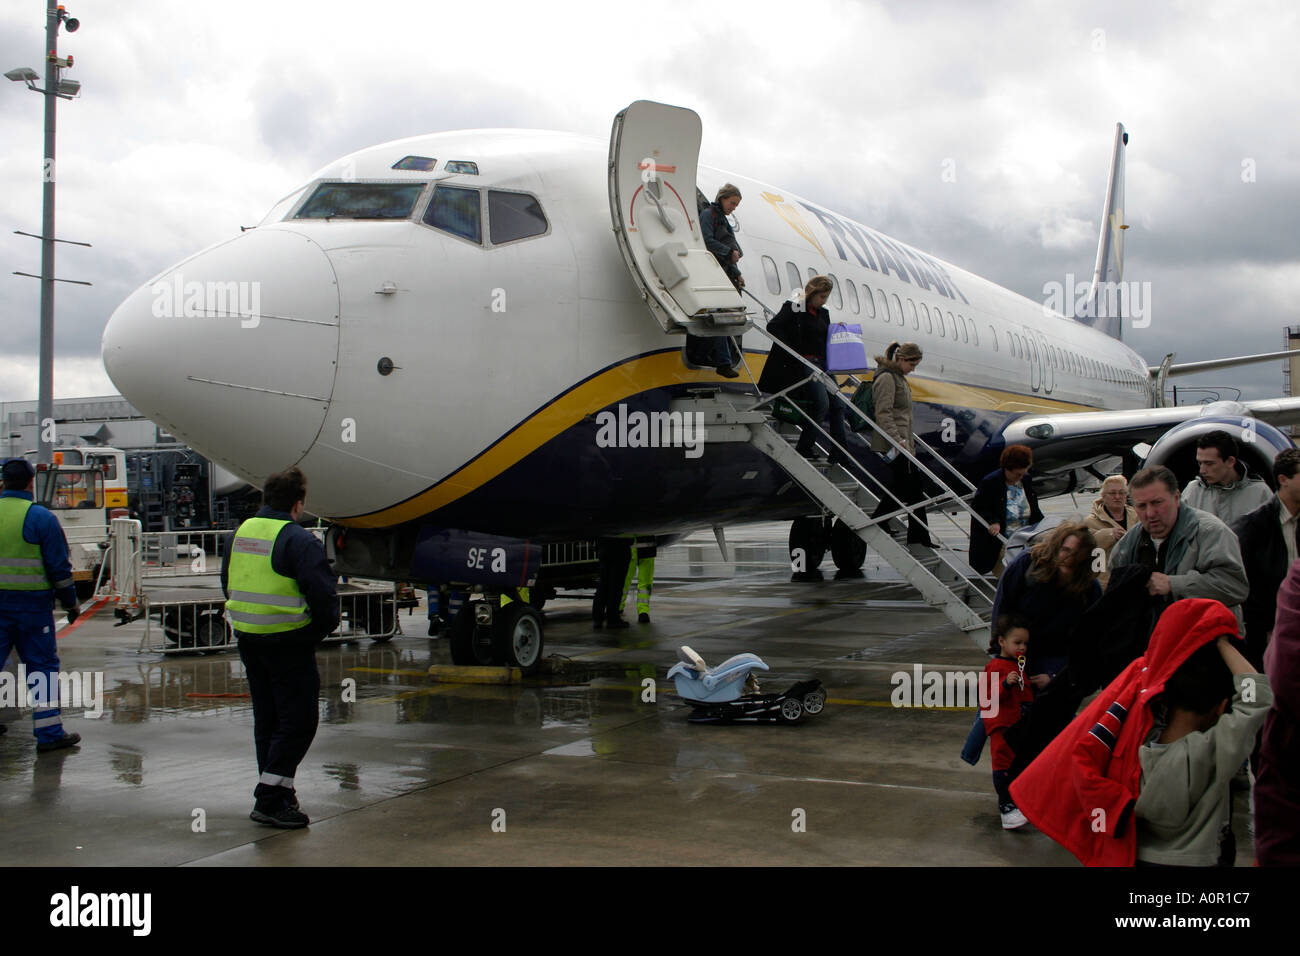 Passengers disembarking from Ryanair flight at Hahn Airport Germany Stock Photo